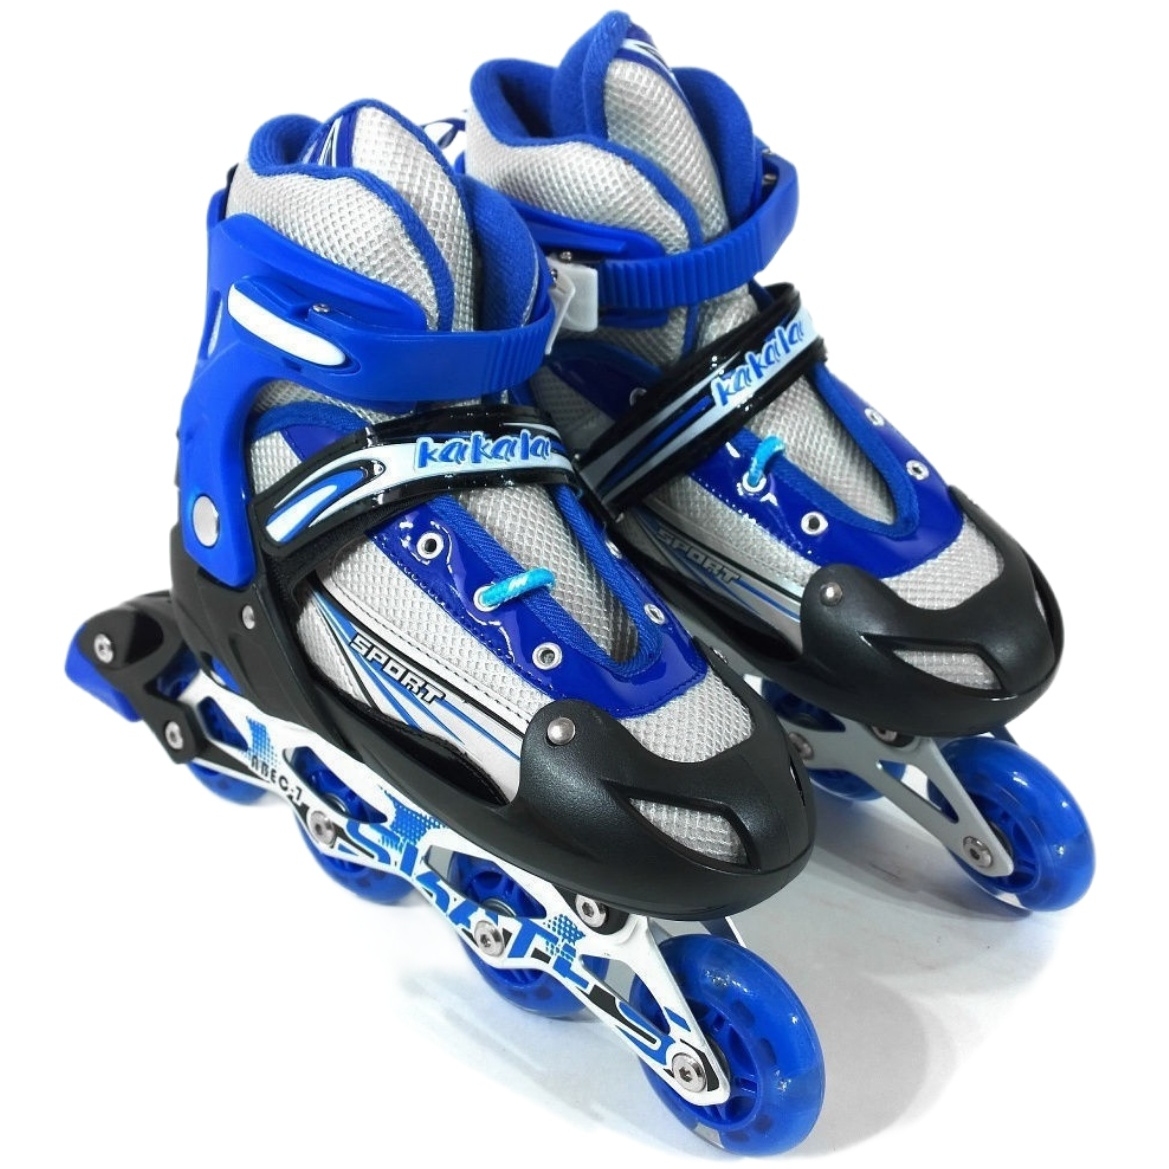 Роликовые коньки синие размер M (35-38) DJS-905 PU